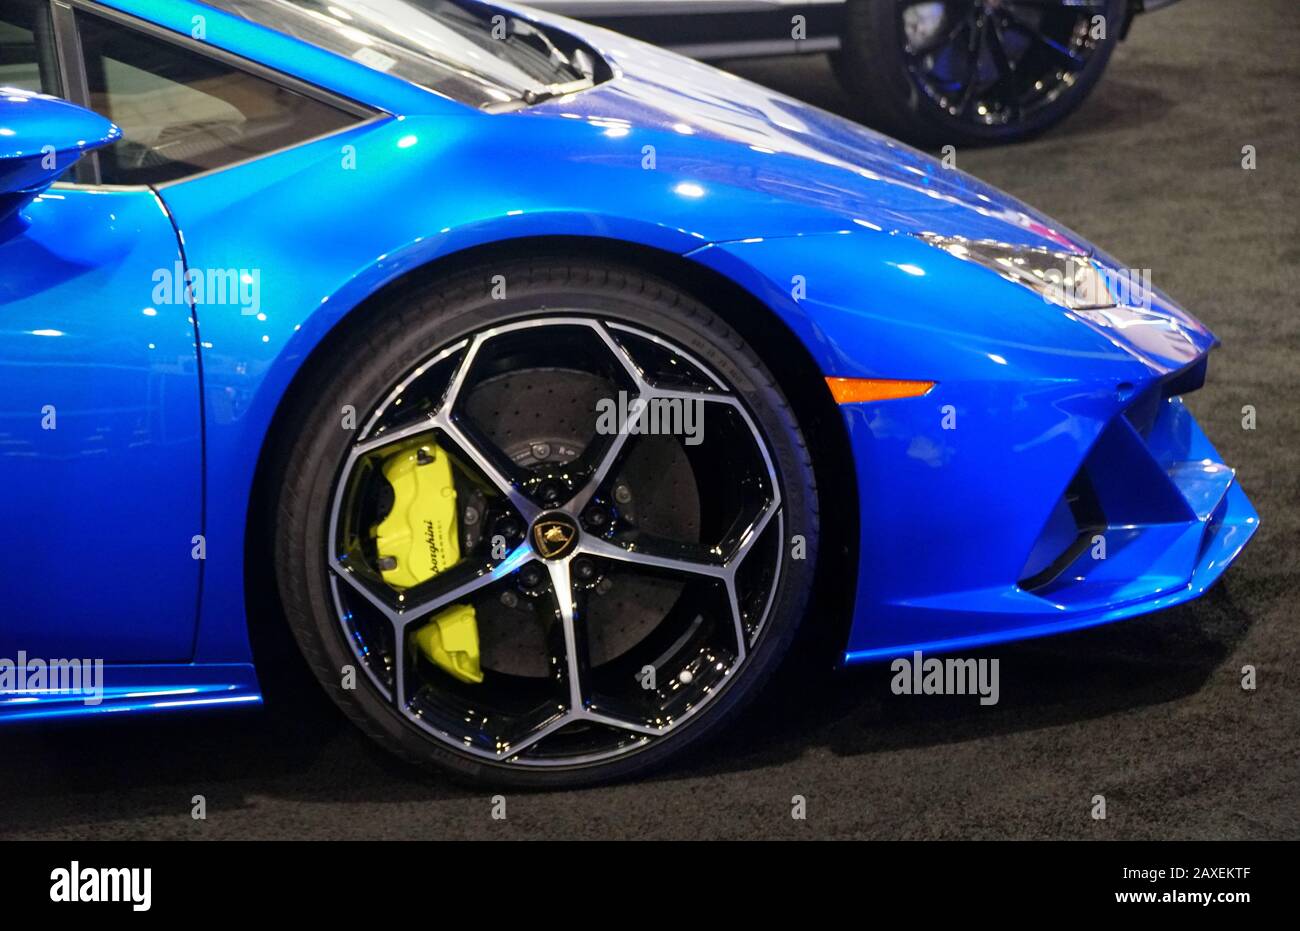 Philadelphia, Pennsylvania, U.S.A - 9 febbraio 2020 - la vista laterale di un colore blu metallico della Lamborghini Huracan cabriolet sport car 2020 Foto Stock